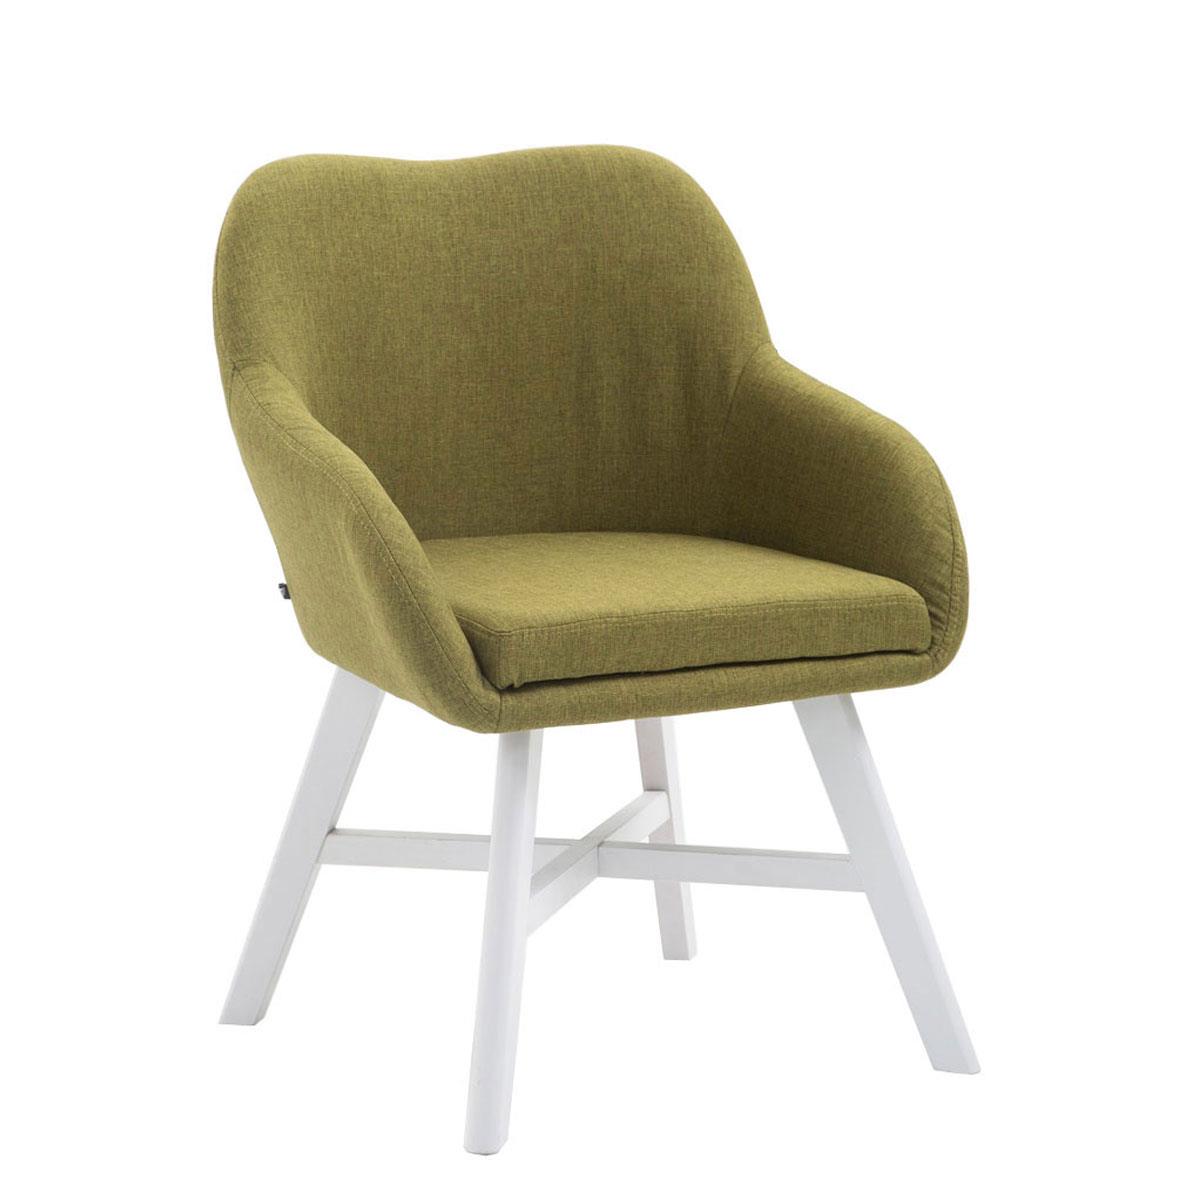 Cadeira de Visita KETEL, Exclusiva, Estructura em Madeira Branca e Tecido, Em Verde